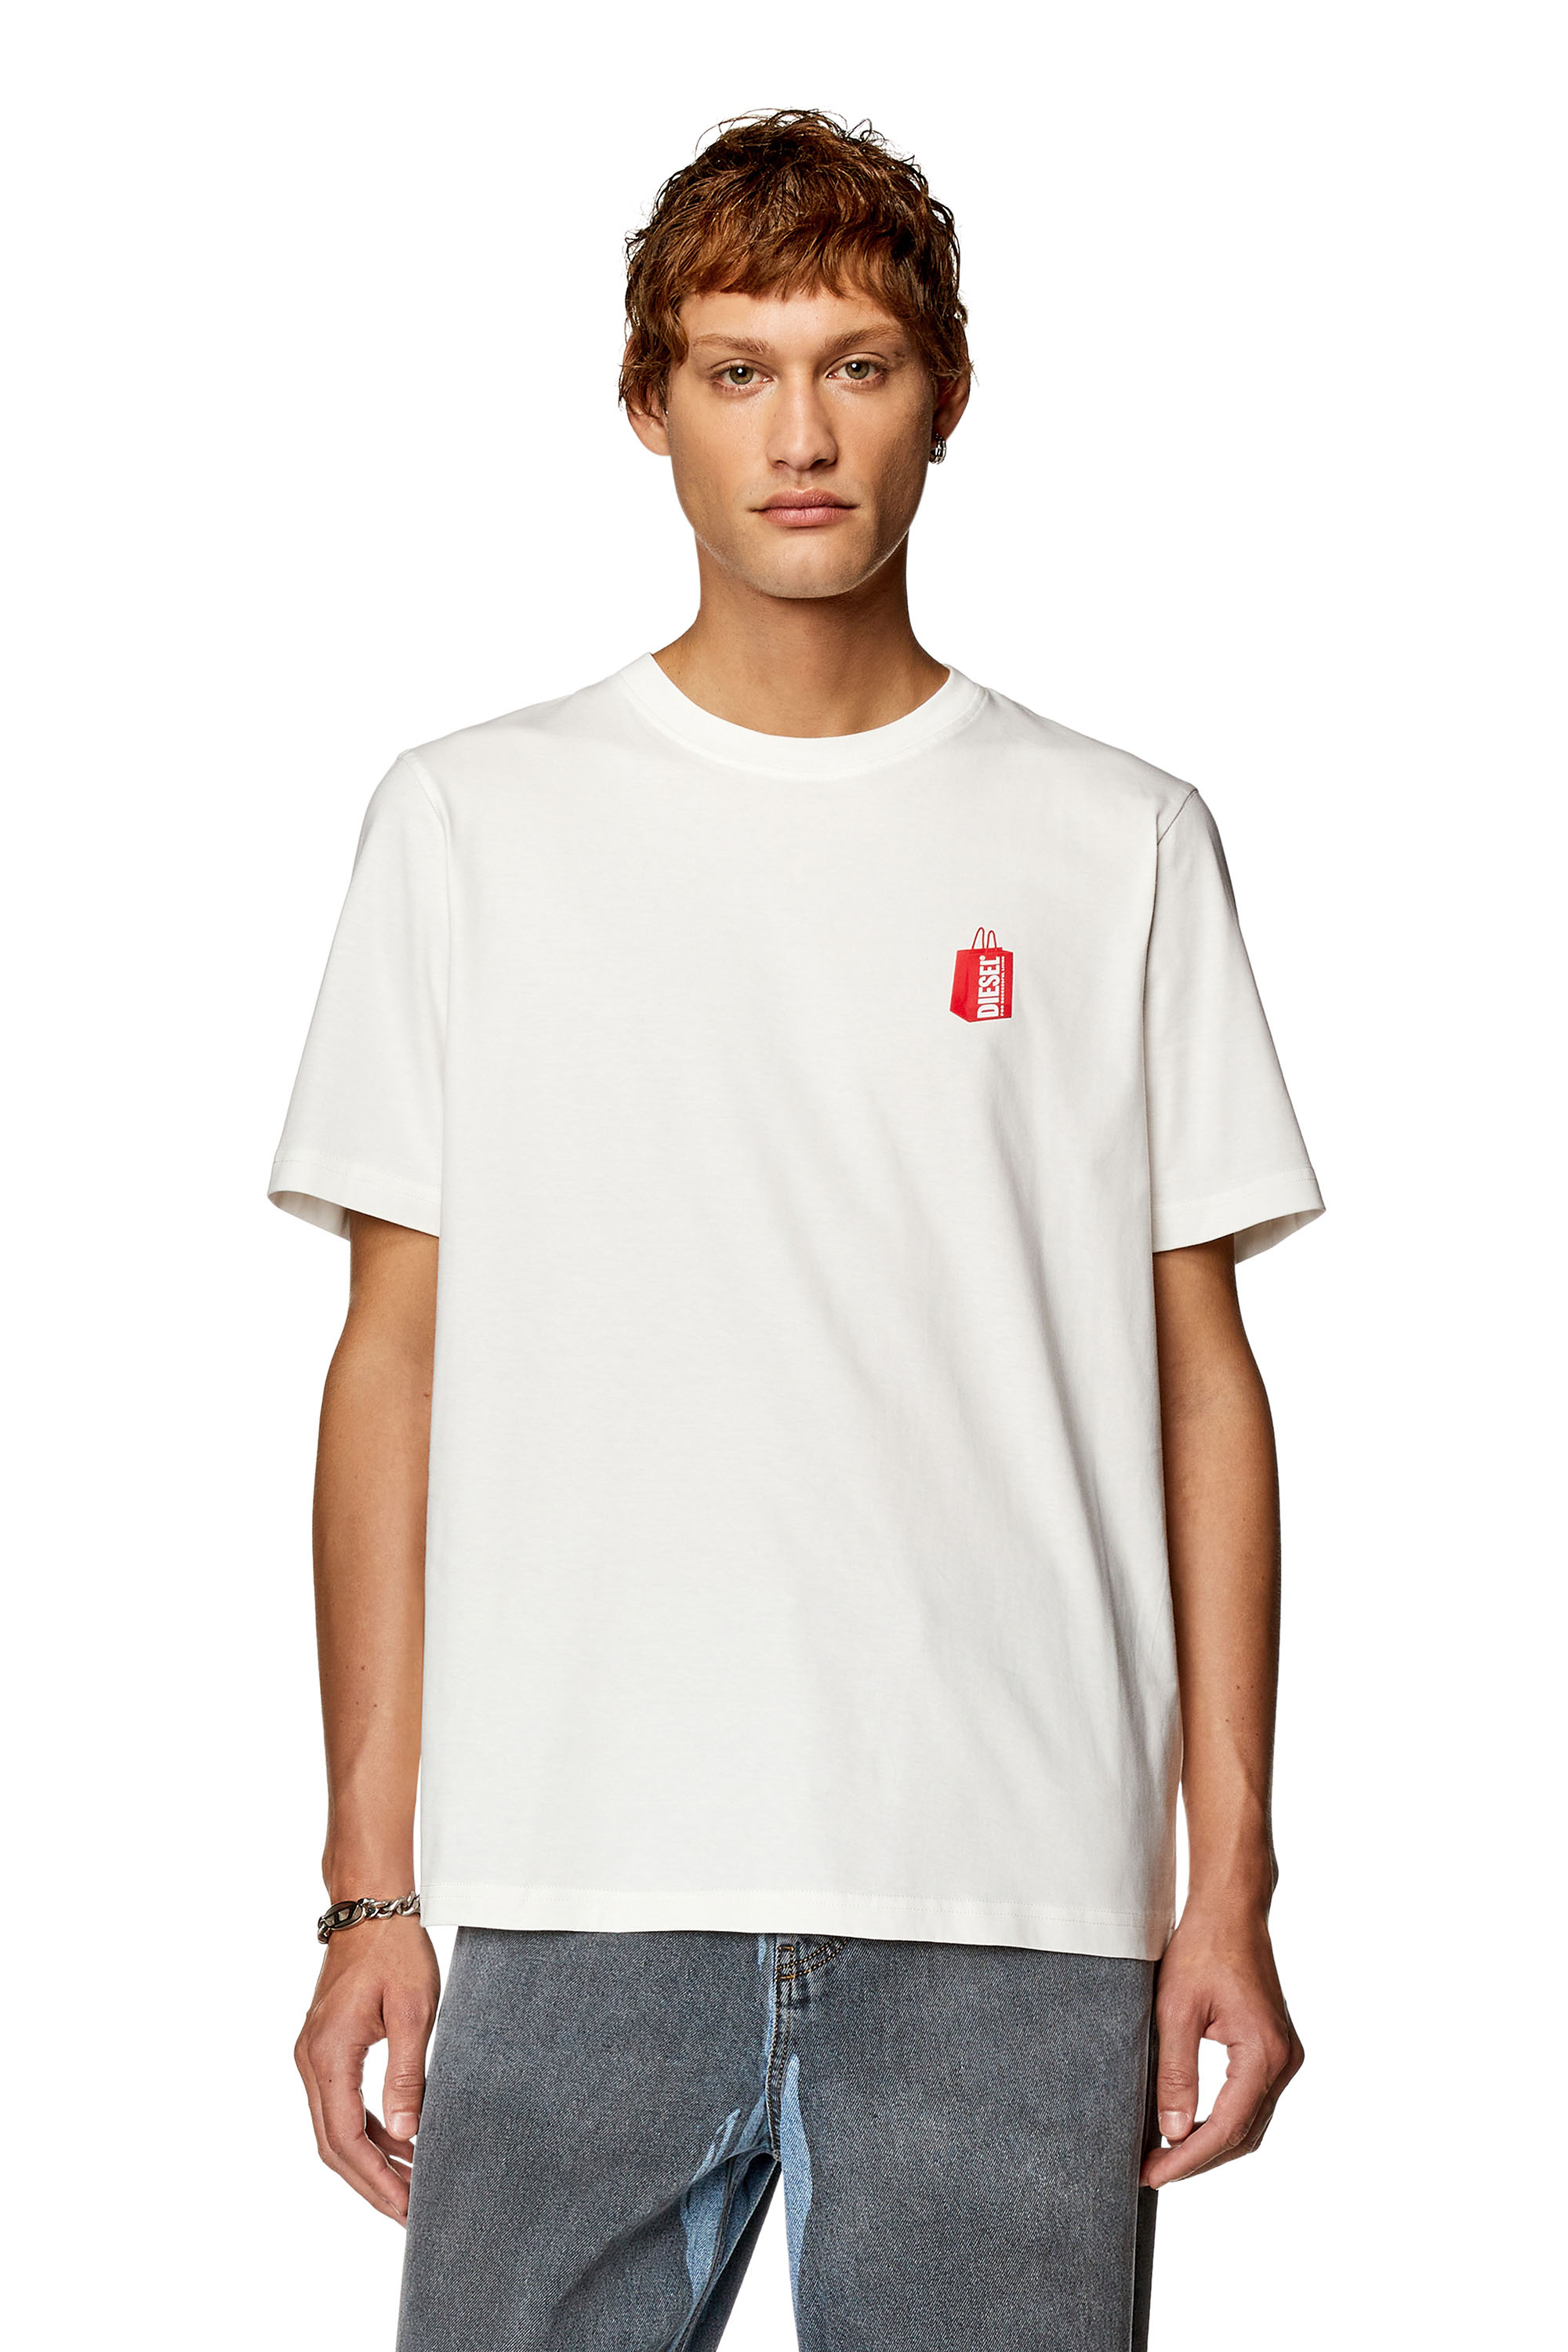 Diesel - T-JUST-N18, Man T-shirt with Diesel bag print in White - Image 1